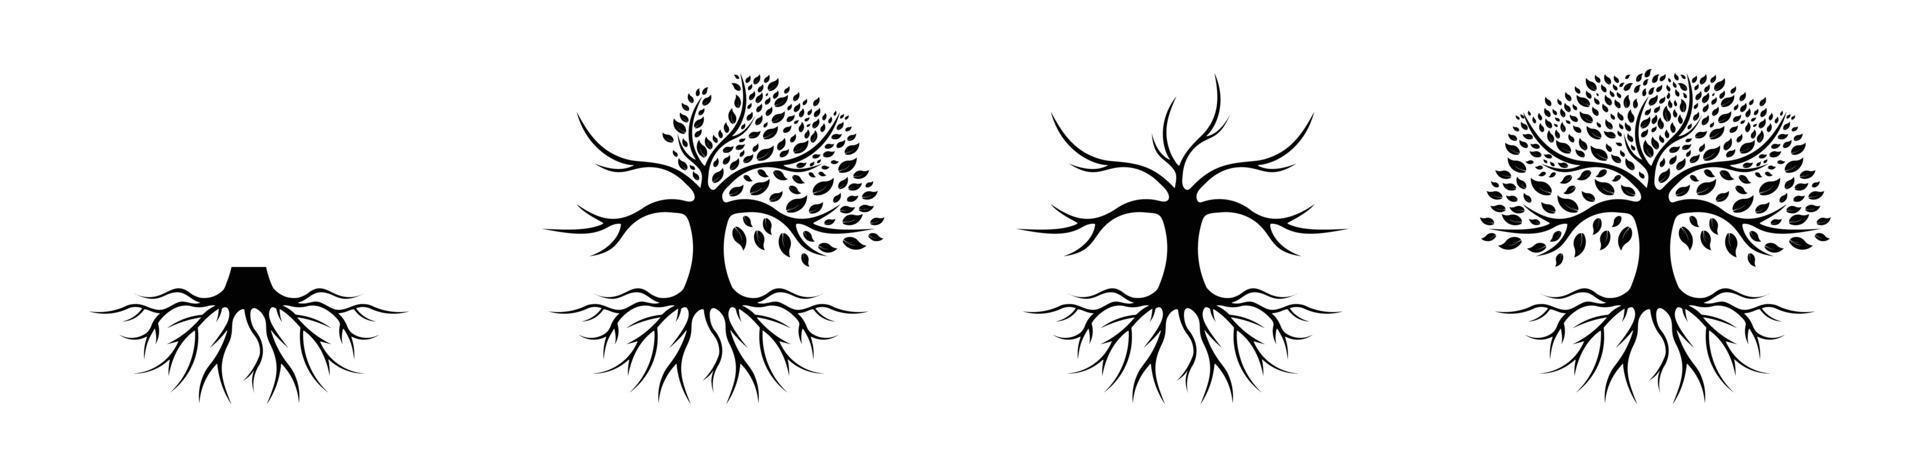 ispirazione per il design del logo dell'albero della vita isolata su sfondo bianco, logo dell'albero di quercia nera e illustrazione vettoriale del design delle radici